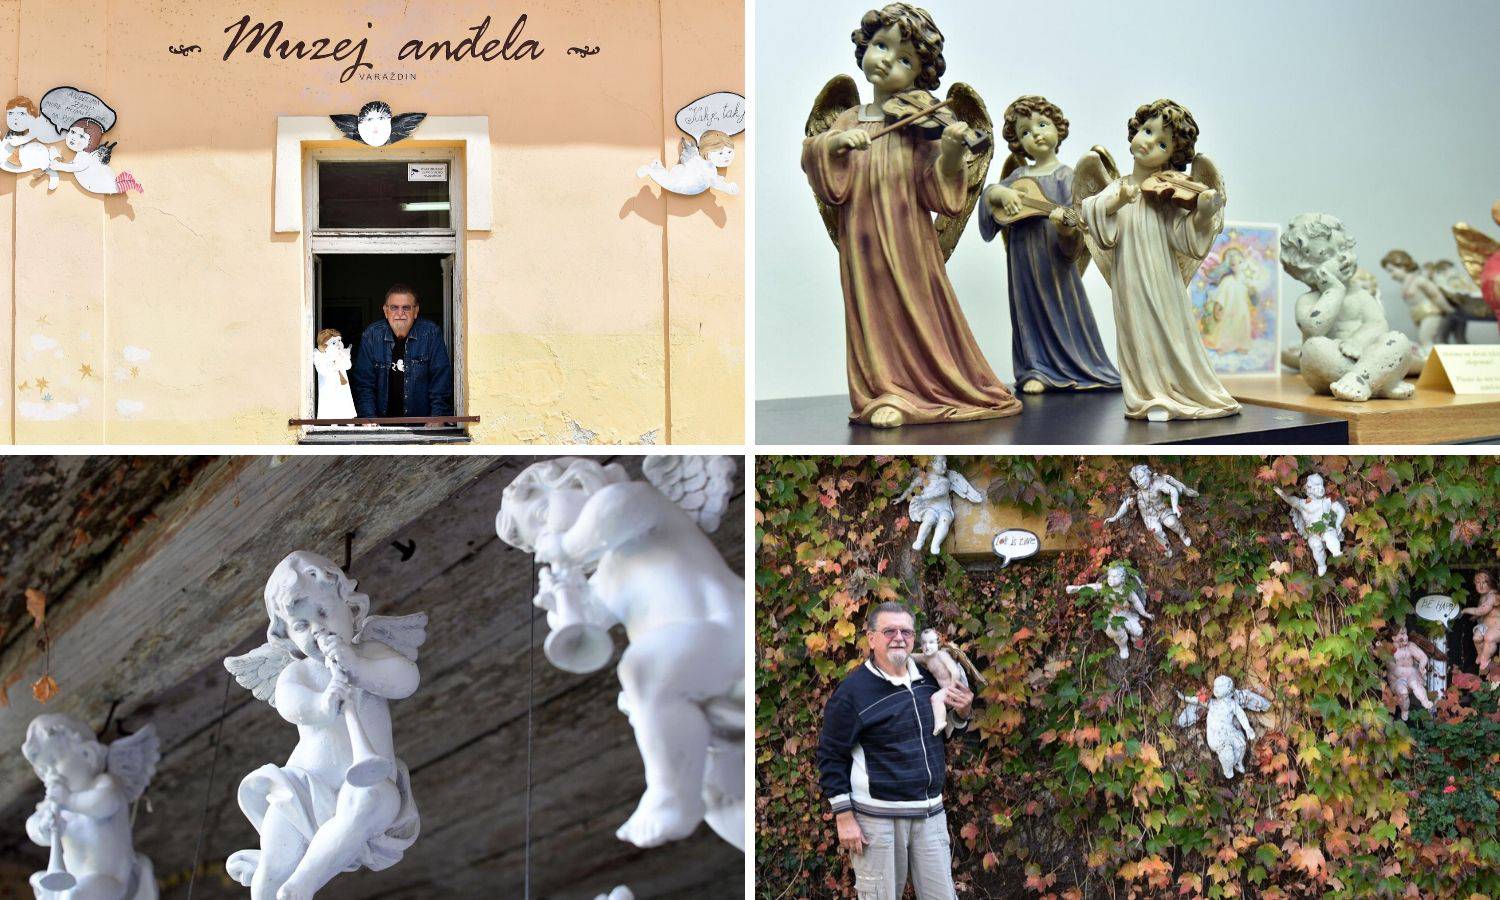 Ljubav prema anđelima prerasla je u Muzej: Željko Prstec čuva više od 500 'svjetskih' anđela